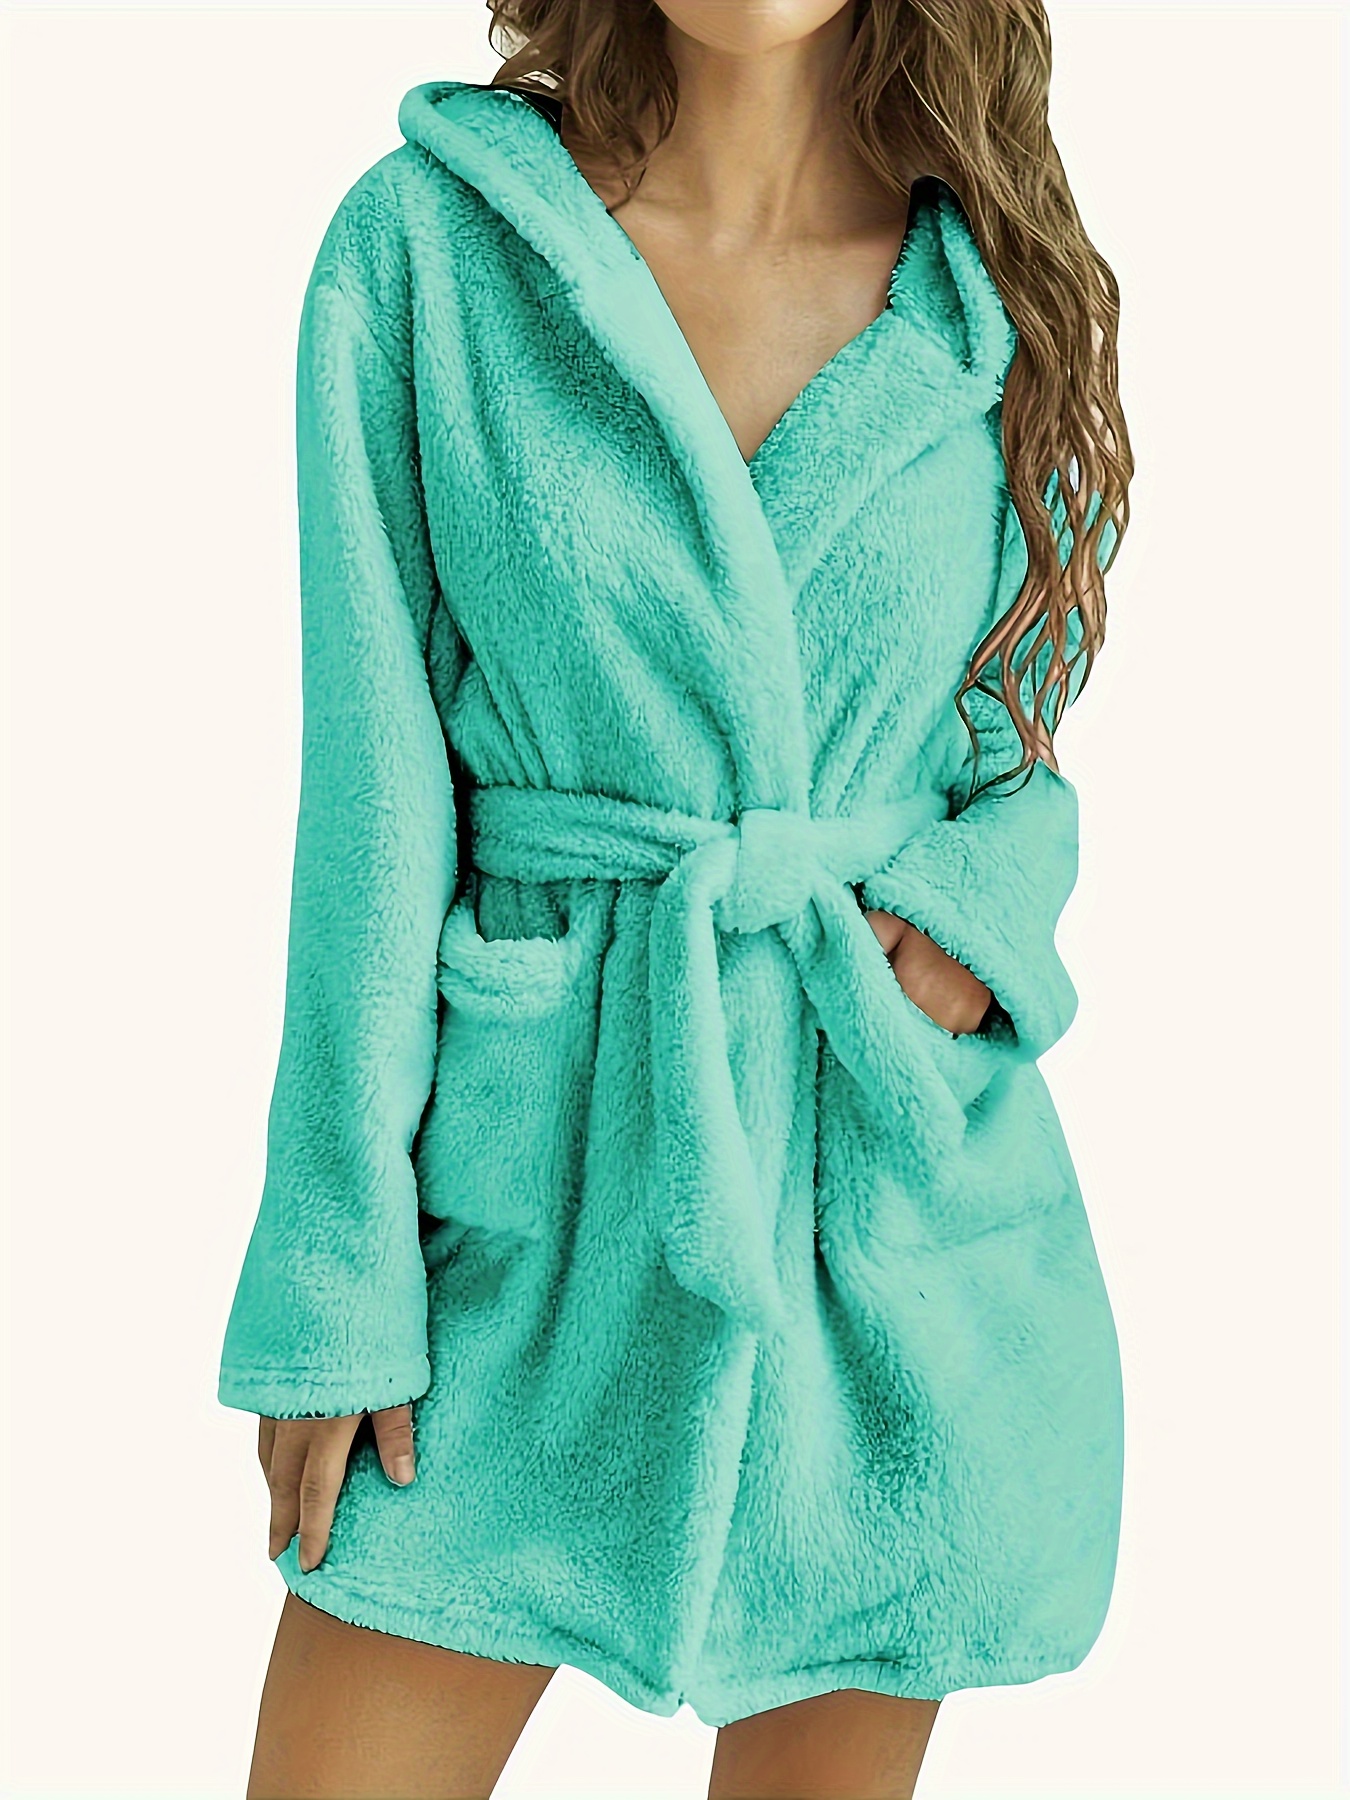 Solid Fuzzy Hooded Night Robe, Long Sleeve Robe With Belt & Pockets, Women's Sleepwear